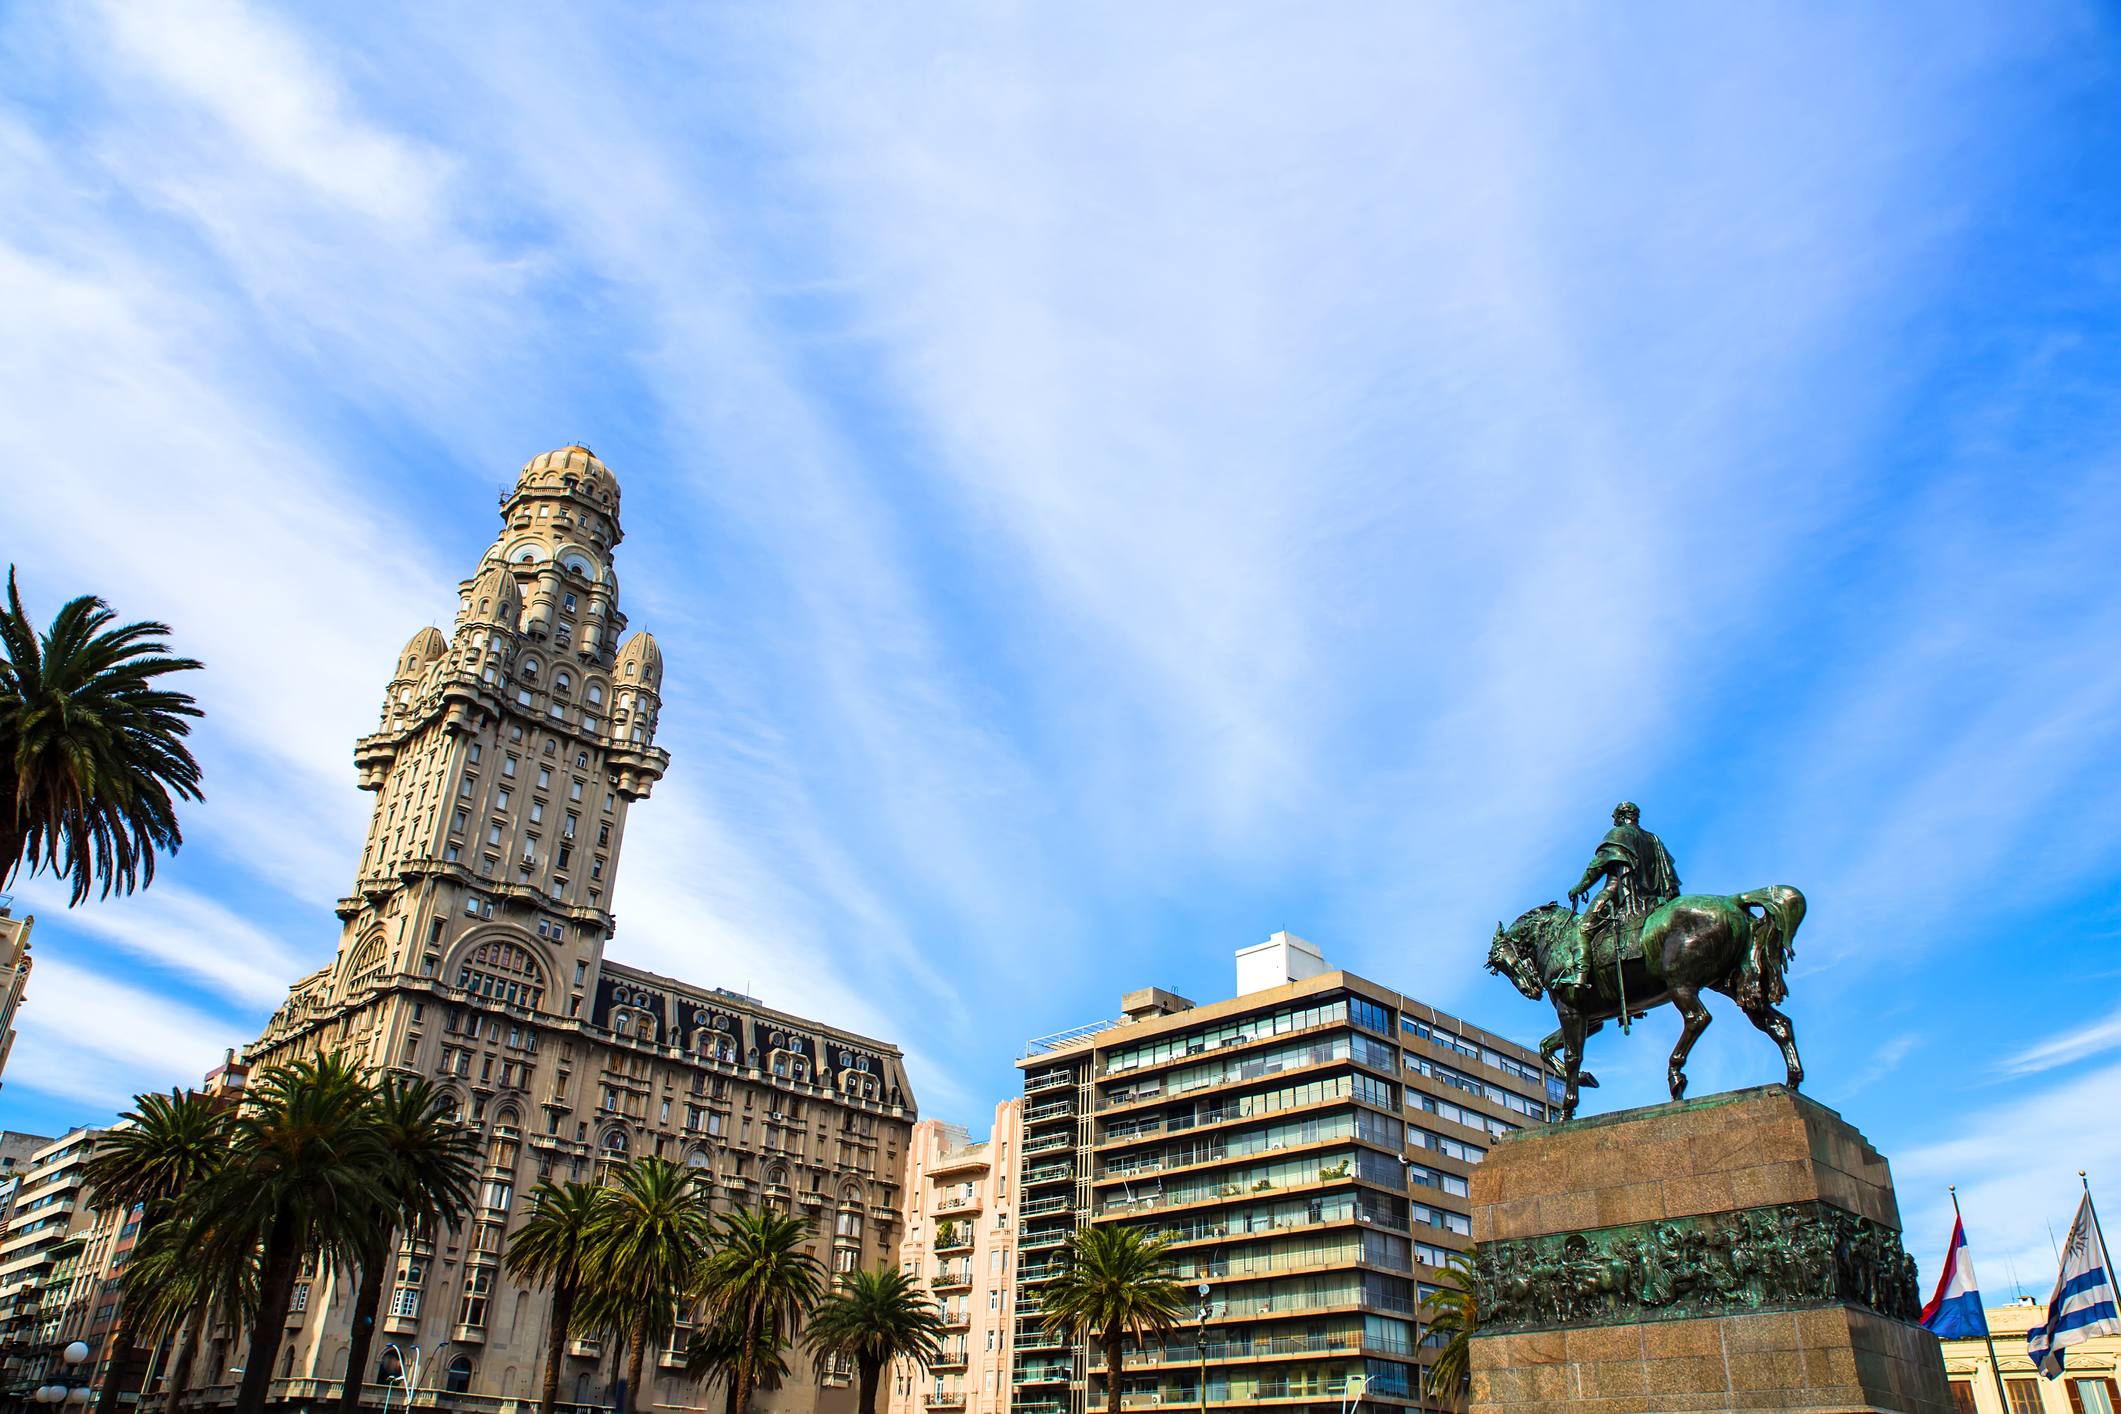 Монтевидео, красивият, далечният и вдъхновяващ град. Столица на Уругвай, той е най-големият град в страната и нейното главно пристанище. Градът е чудесен за всеки ценител на архитектурата. Тук може да видите огромно разнообразие от стилове. Тук може да видите едно от най-интересните здания, което се е превърнало в символ - Паласио Салво. Със своите 27 етажа, както и неповторимият силует, виждащ се още от пристанището, сградата дълго време е била най-високата в тази част на света. Прекрасната сграда, изградена по проект на архитект Марио Паланти, е завършена през 1925 г.